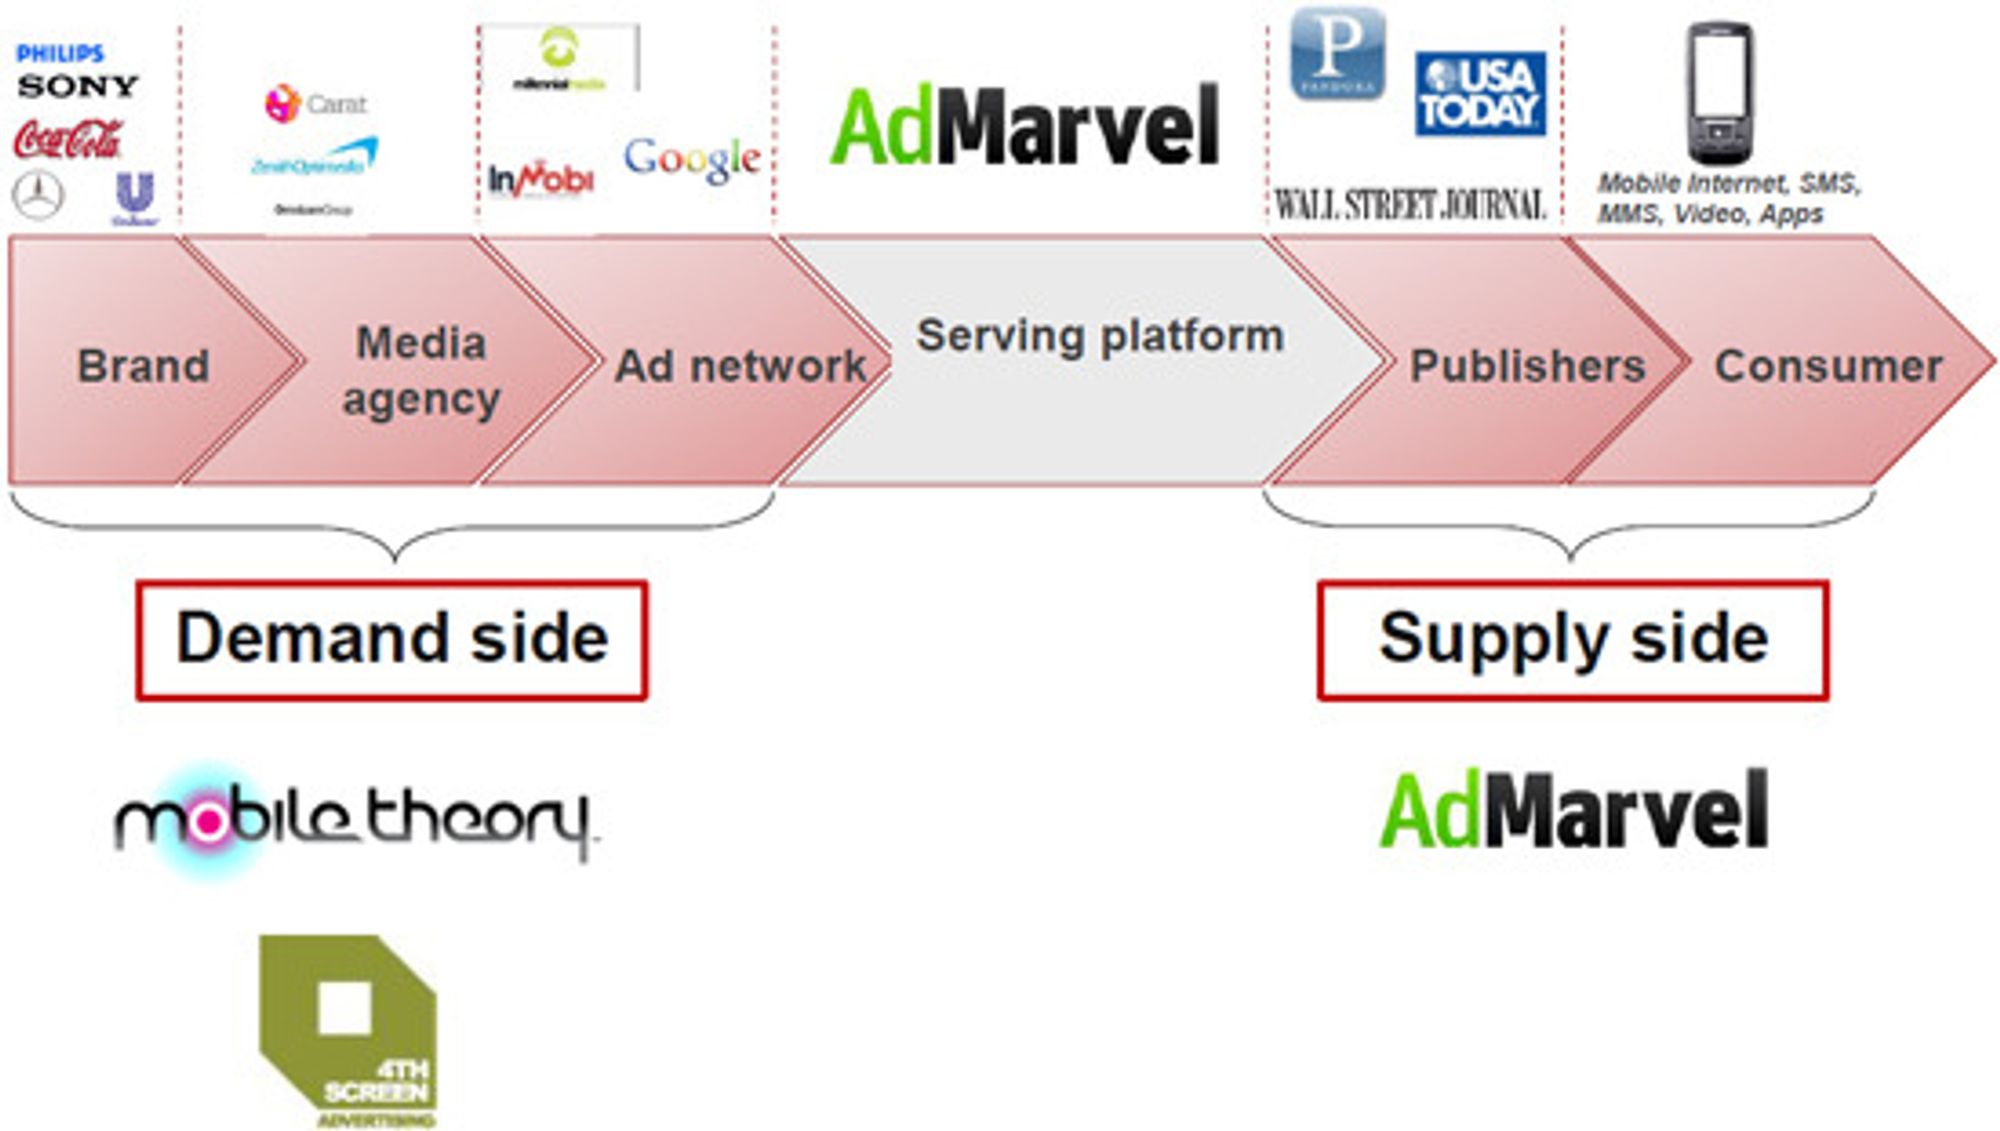 Opera bruker denne plansjen for å forklare satsingen på tjenester for mobilannonsering. AdMarvel ble kjøpt i januar 2010. Mobile Theory og 4TH Screen er nyanskaffelser.